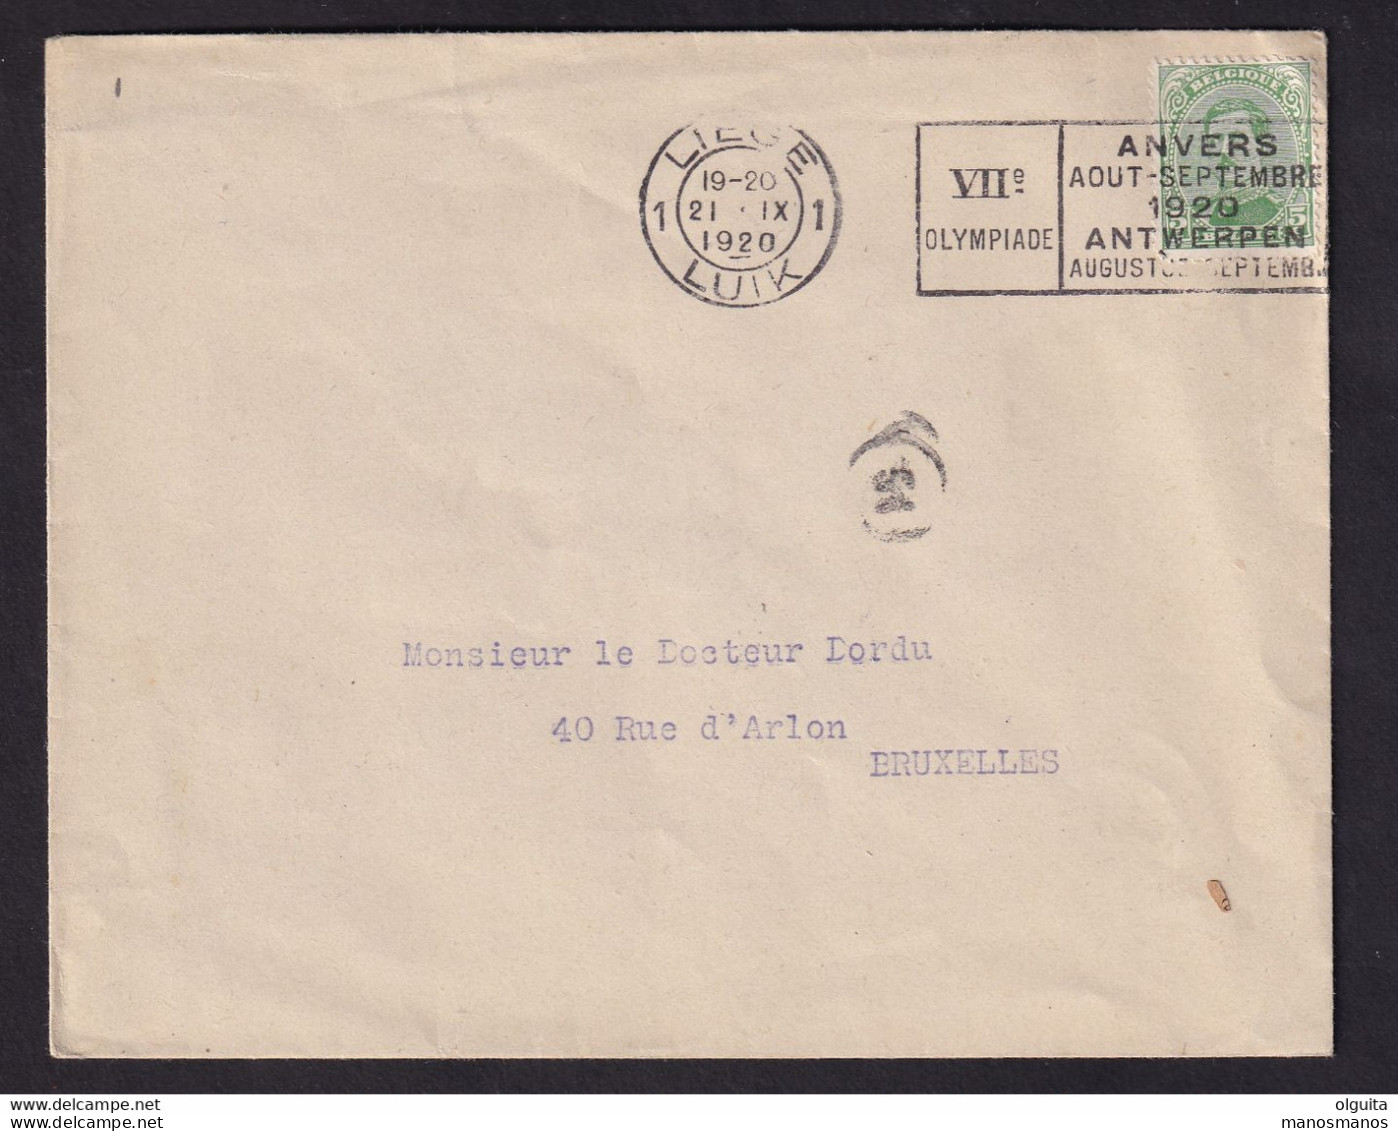 DDCC 348 -- LES IMPRIMES - Enveloppe Ouverte TP Albert 5 C - Cachet Mécanique LIEGE 1 Jeux Olympiques 1920 - Ete 1920: Anvers